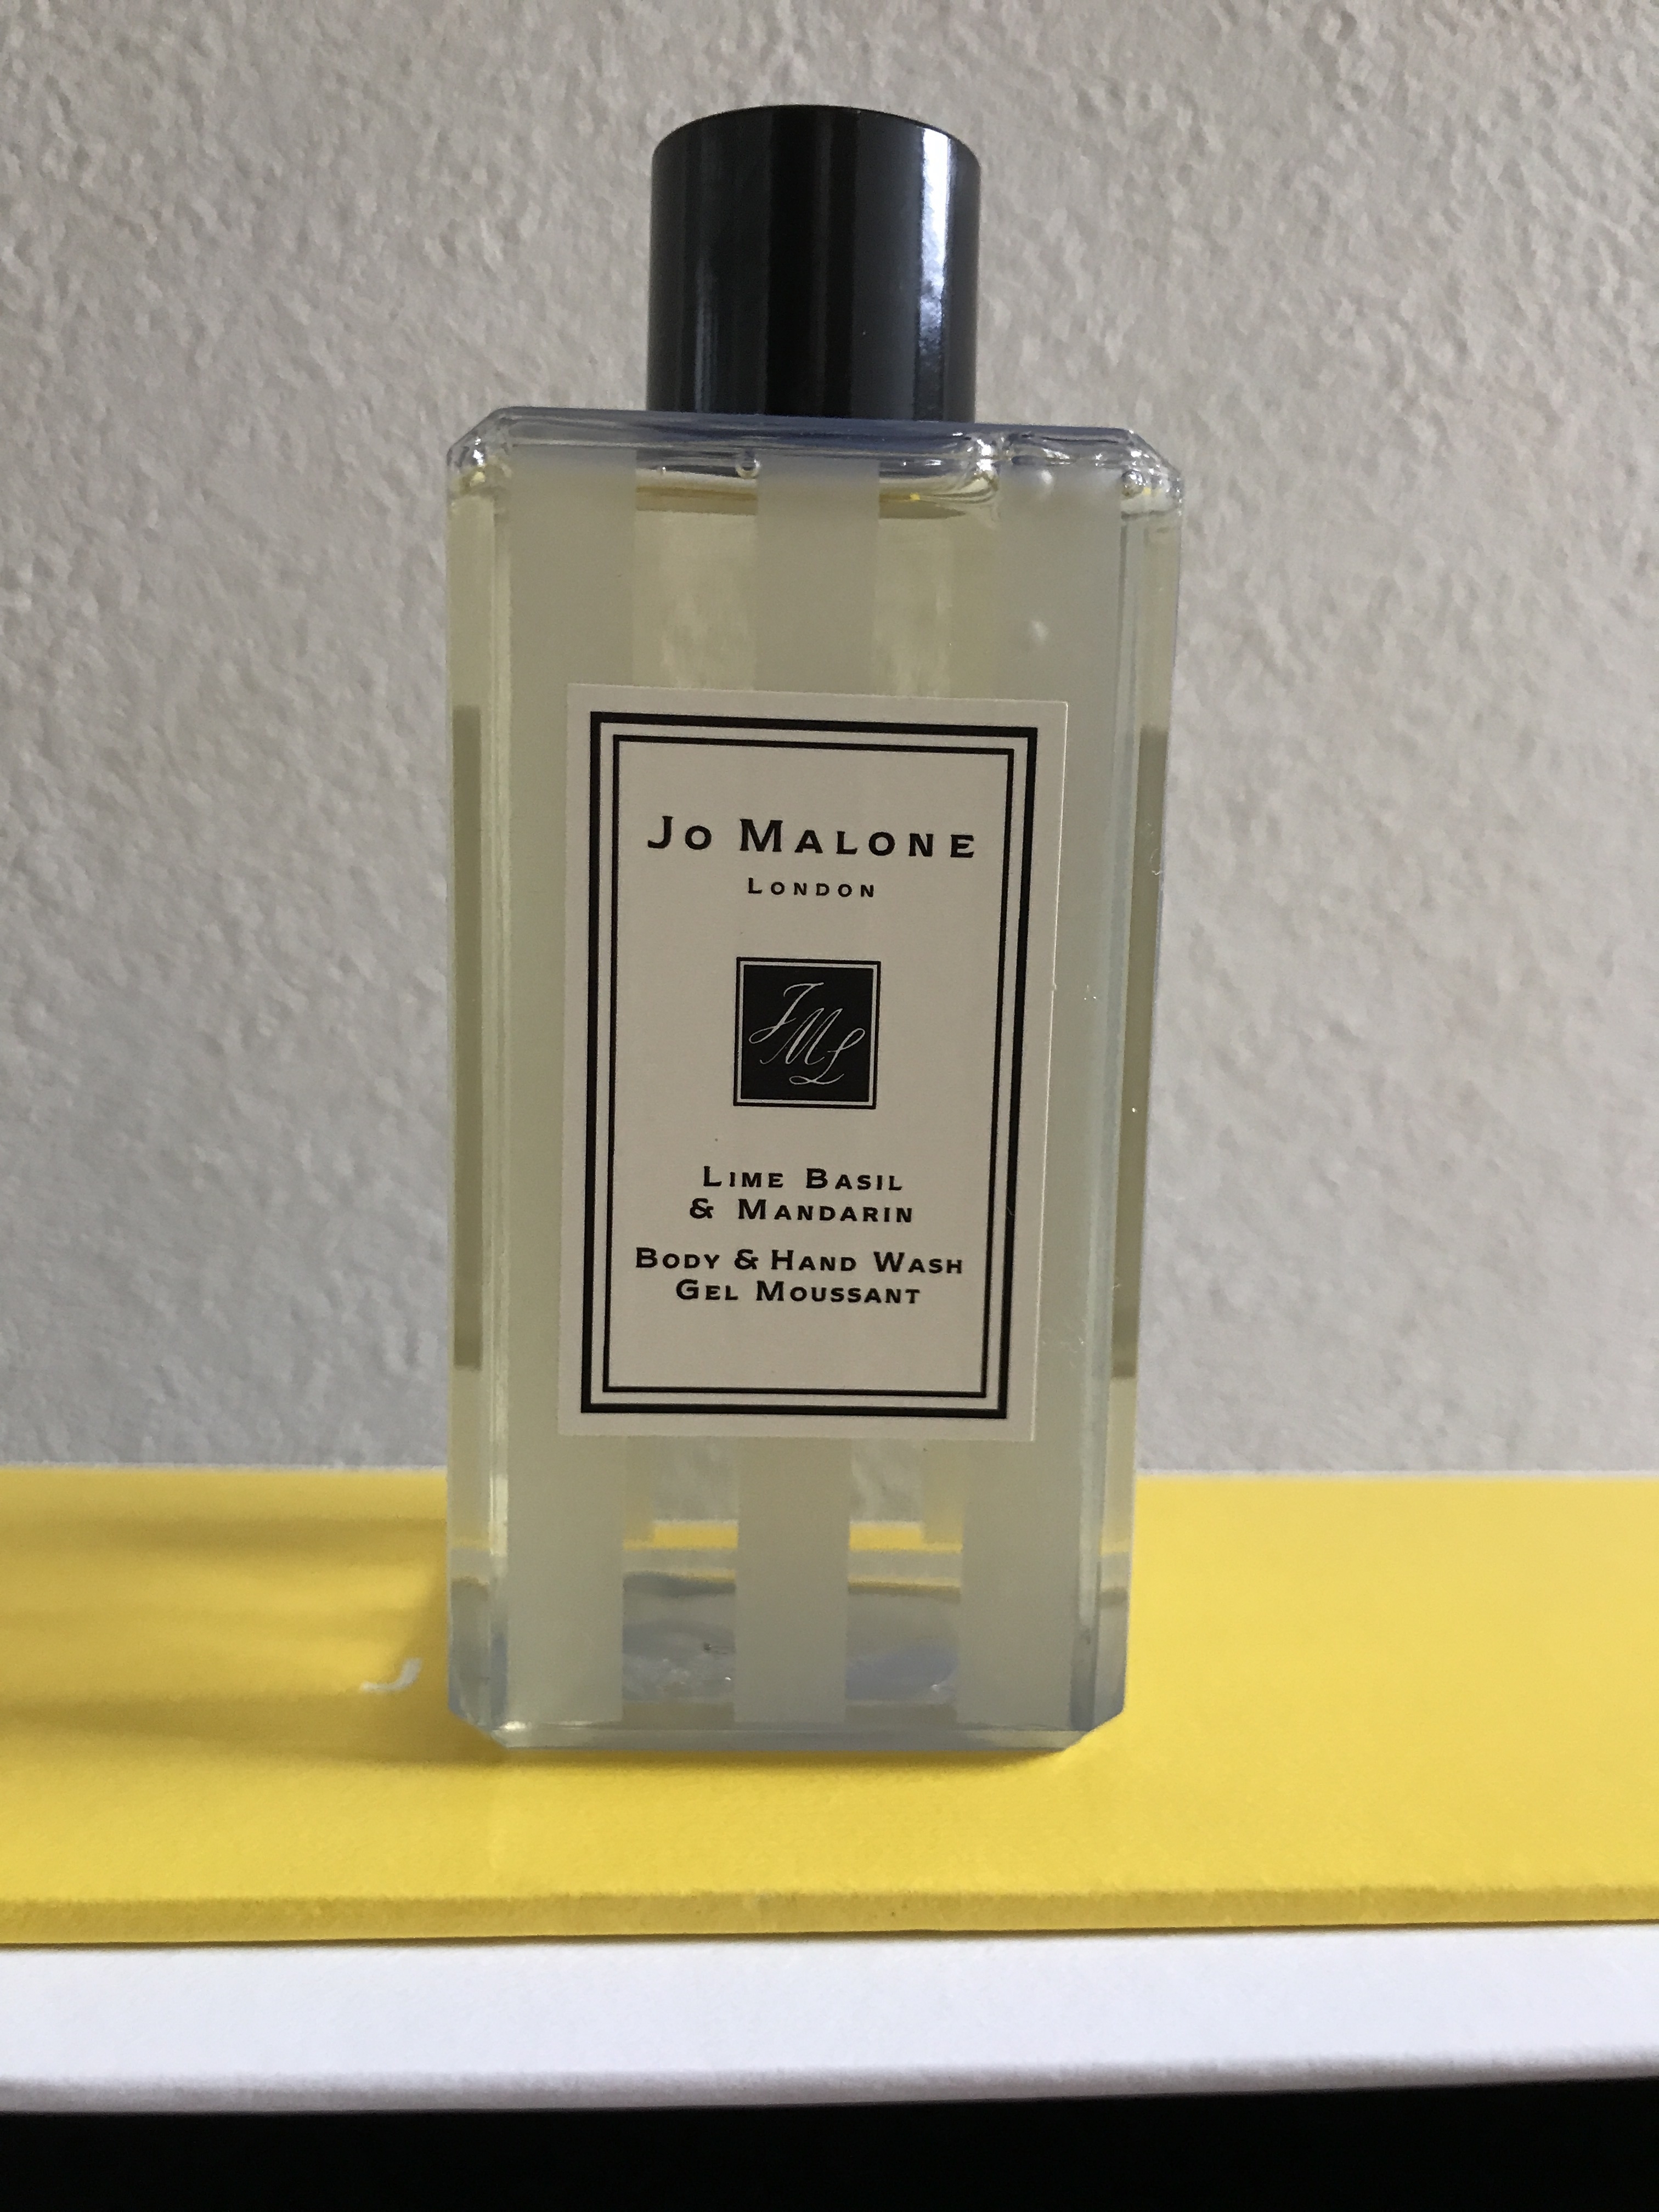 素敵な Jo MALONE LONDON ハウス オブ ジョー マローン ロンドン 香水